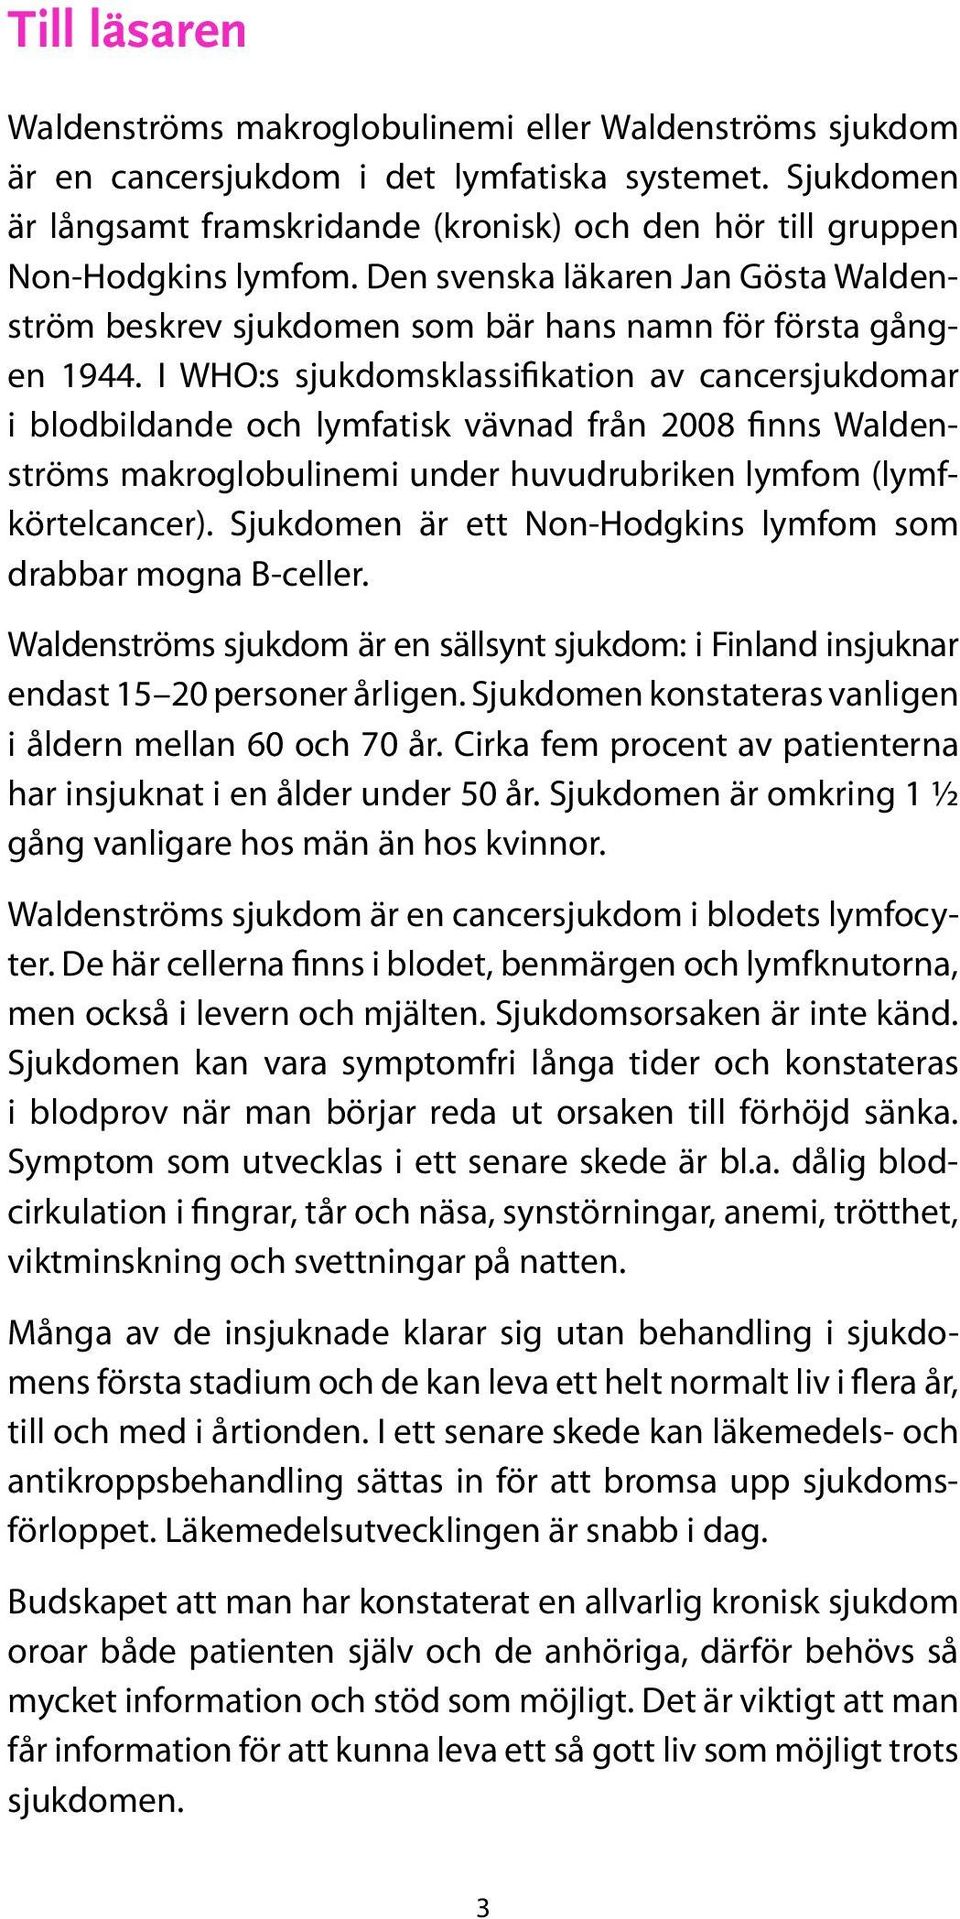 I WHO:s sjukdomsklassifikation av cancersjukdomar i blodbildande och lymfatisk vävnad från 2008 finns Waldenströms makroglobulinemi under huvudrubriken lymfom (lymfkörtelcancer).